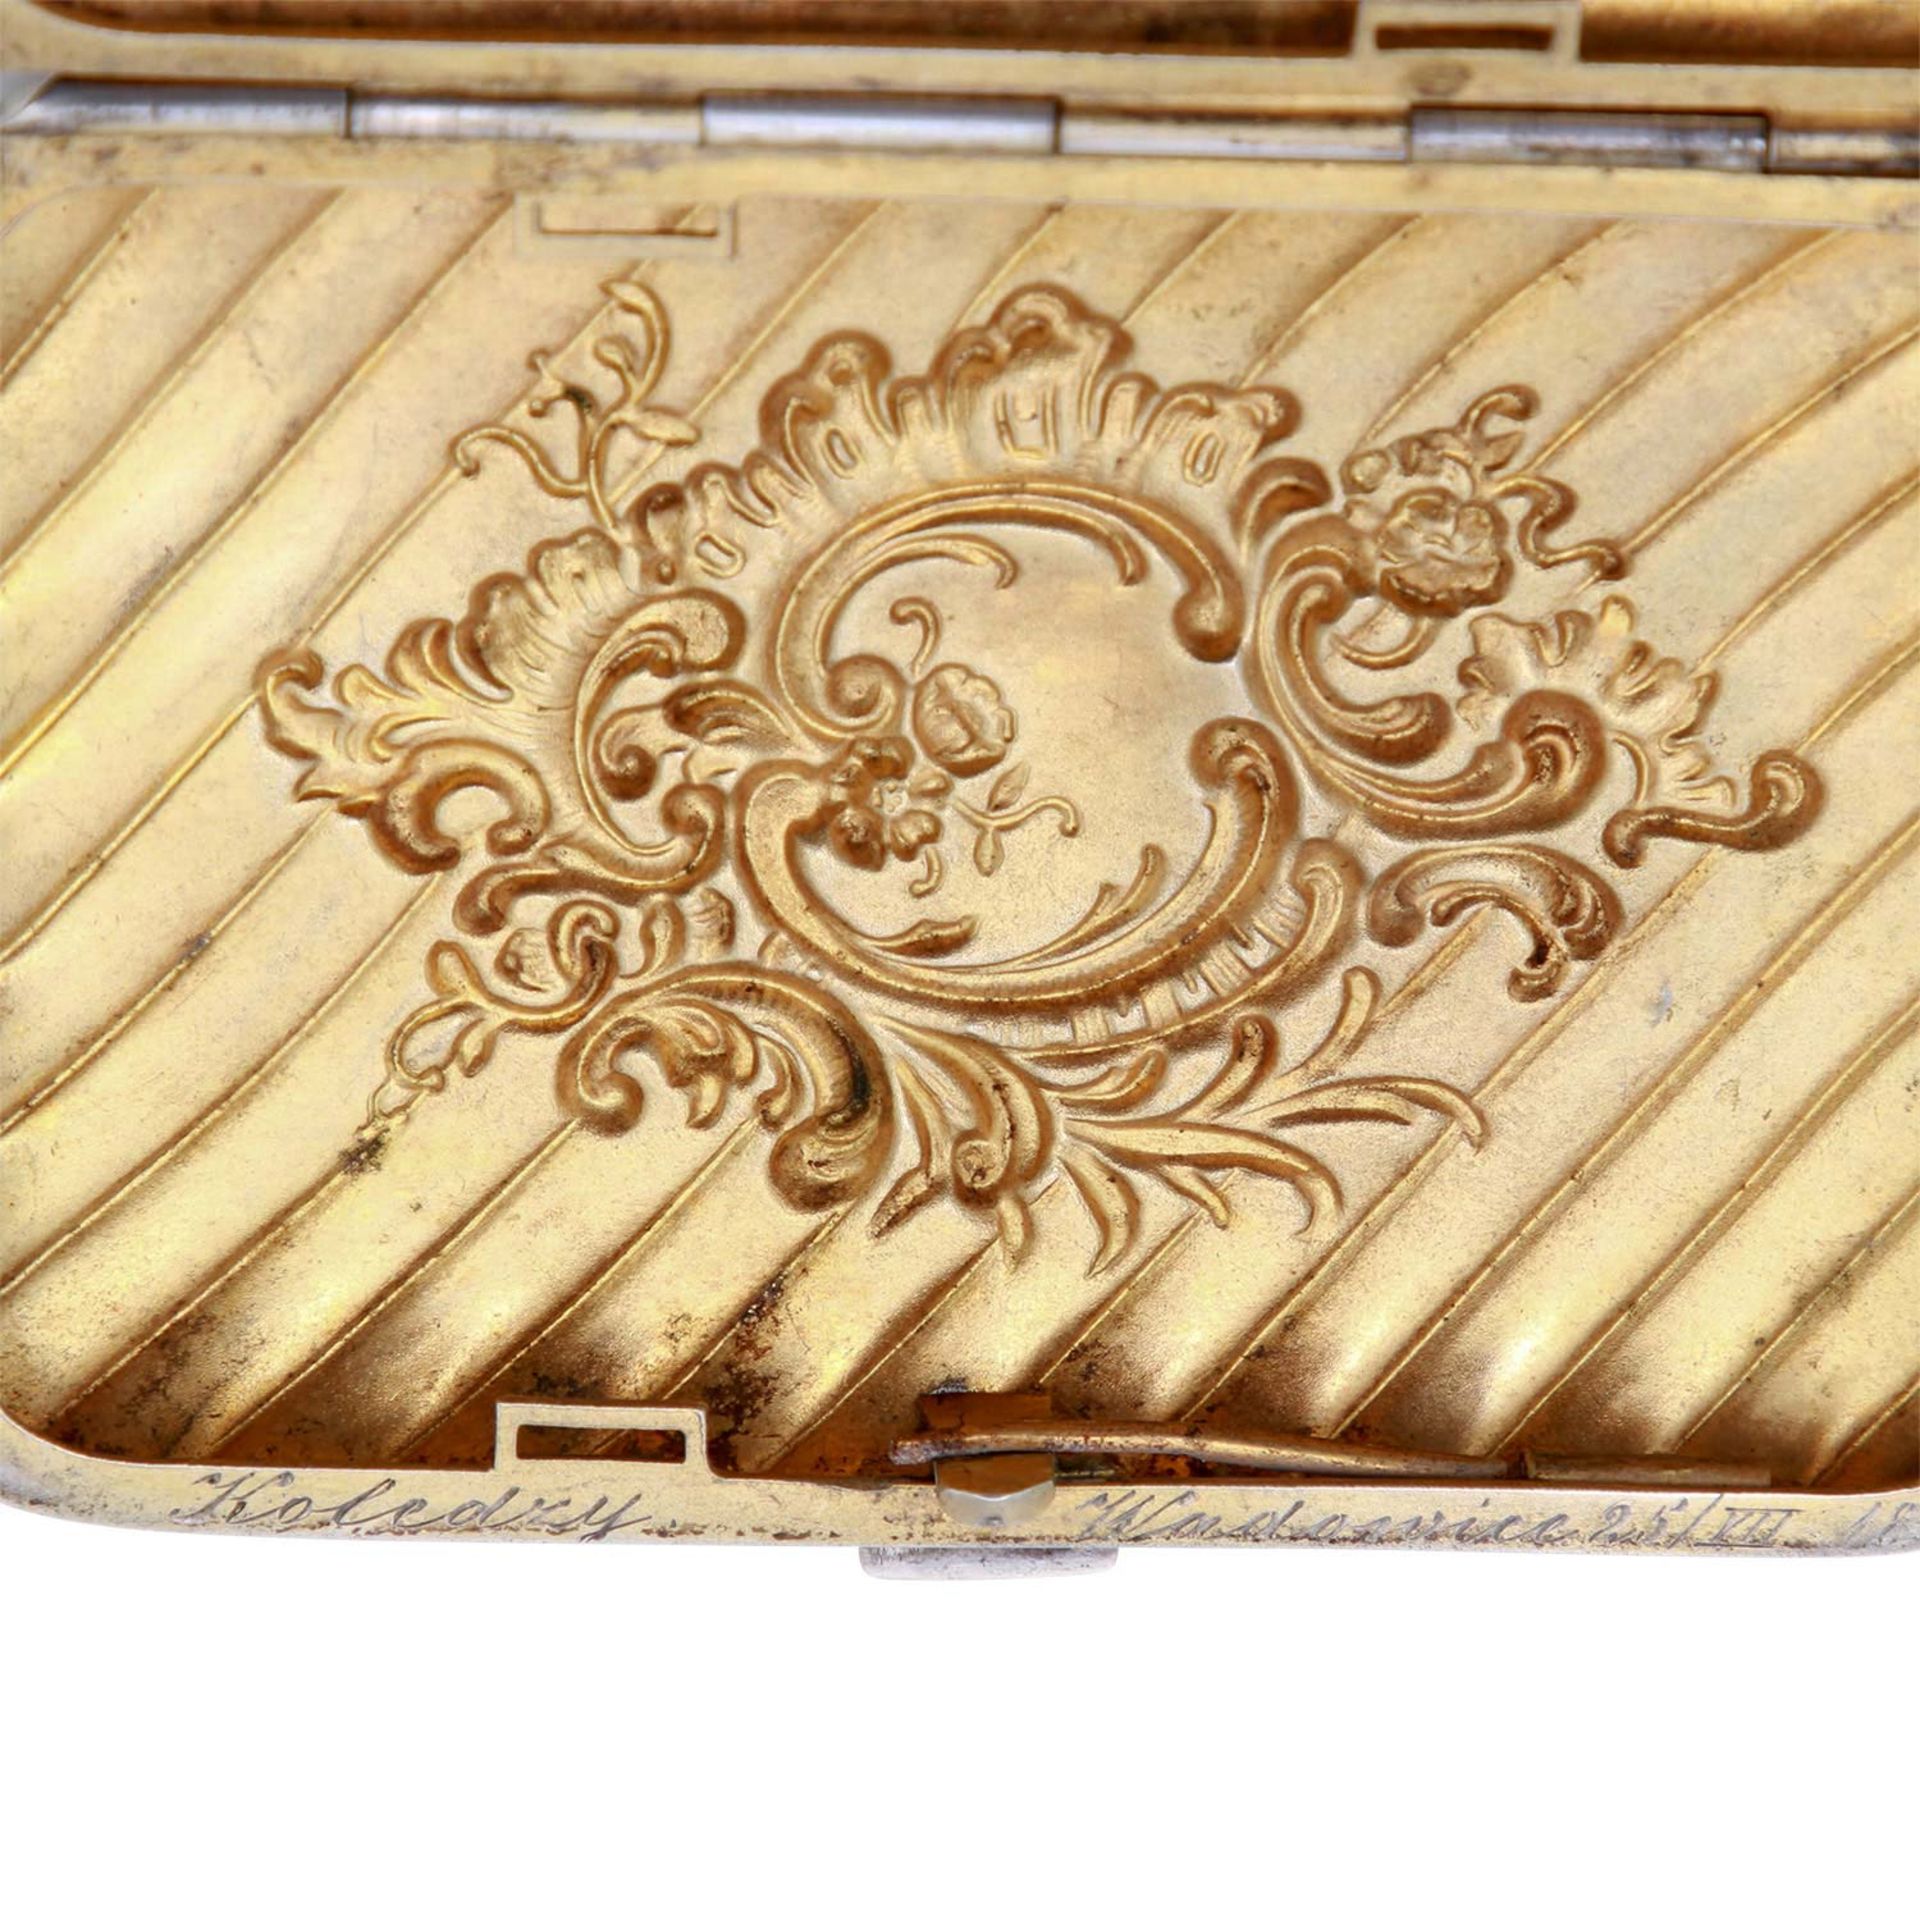 DEUTSCH Zigarettendose, 800 Silber, um 1898.Rechteckige Dose mit scharniertem Deckel, Reliefdekor - Bild 4 aus 5